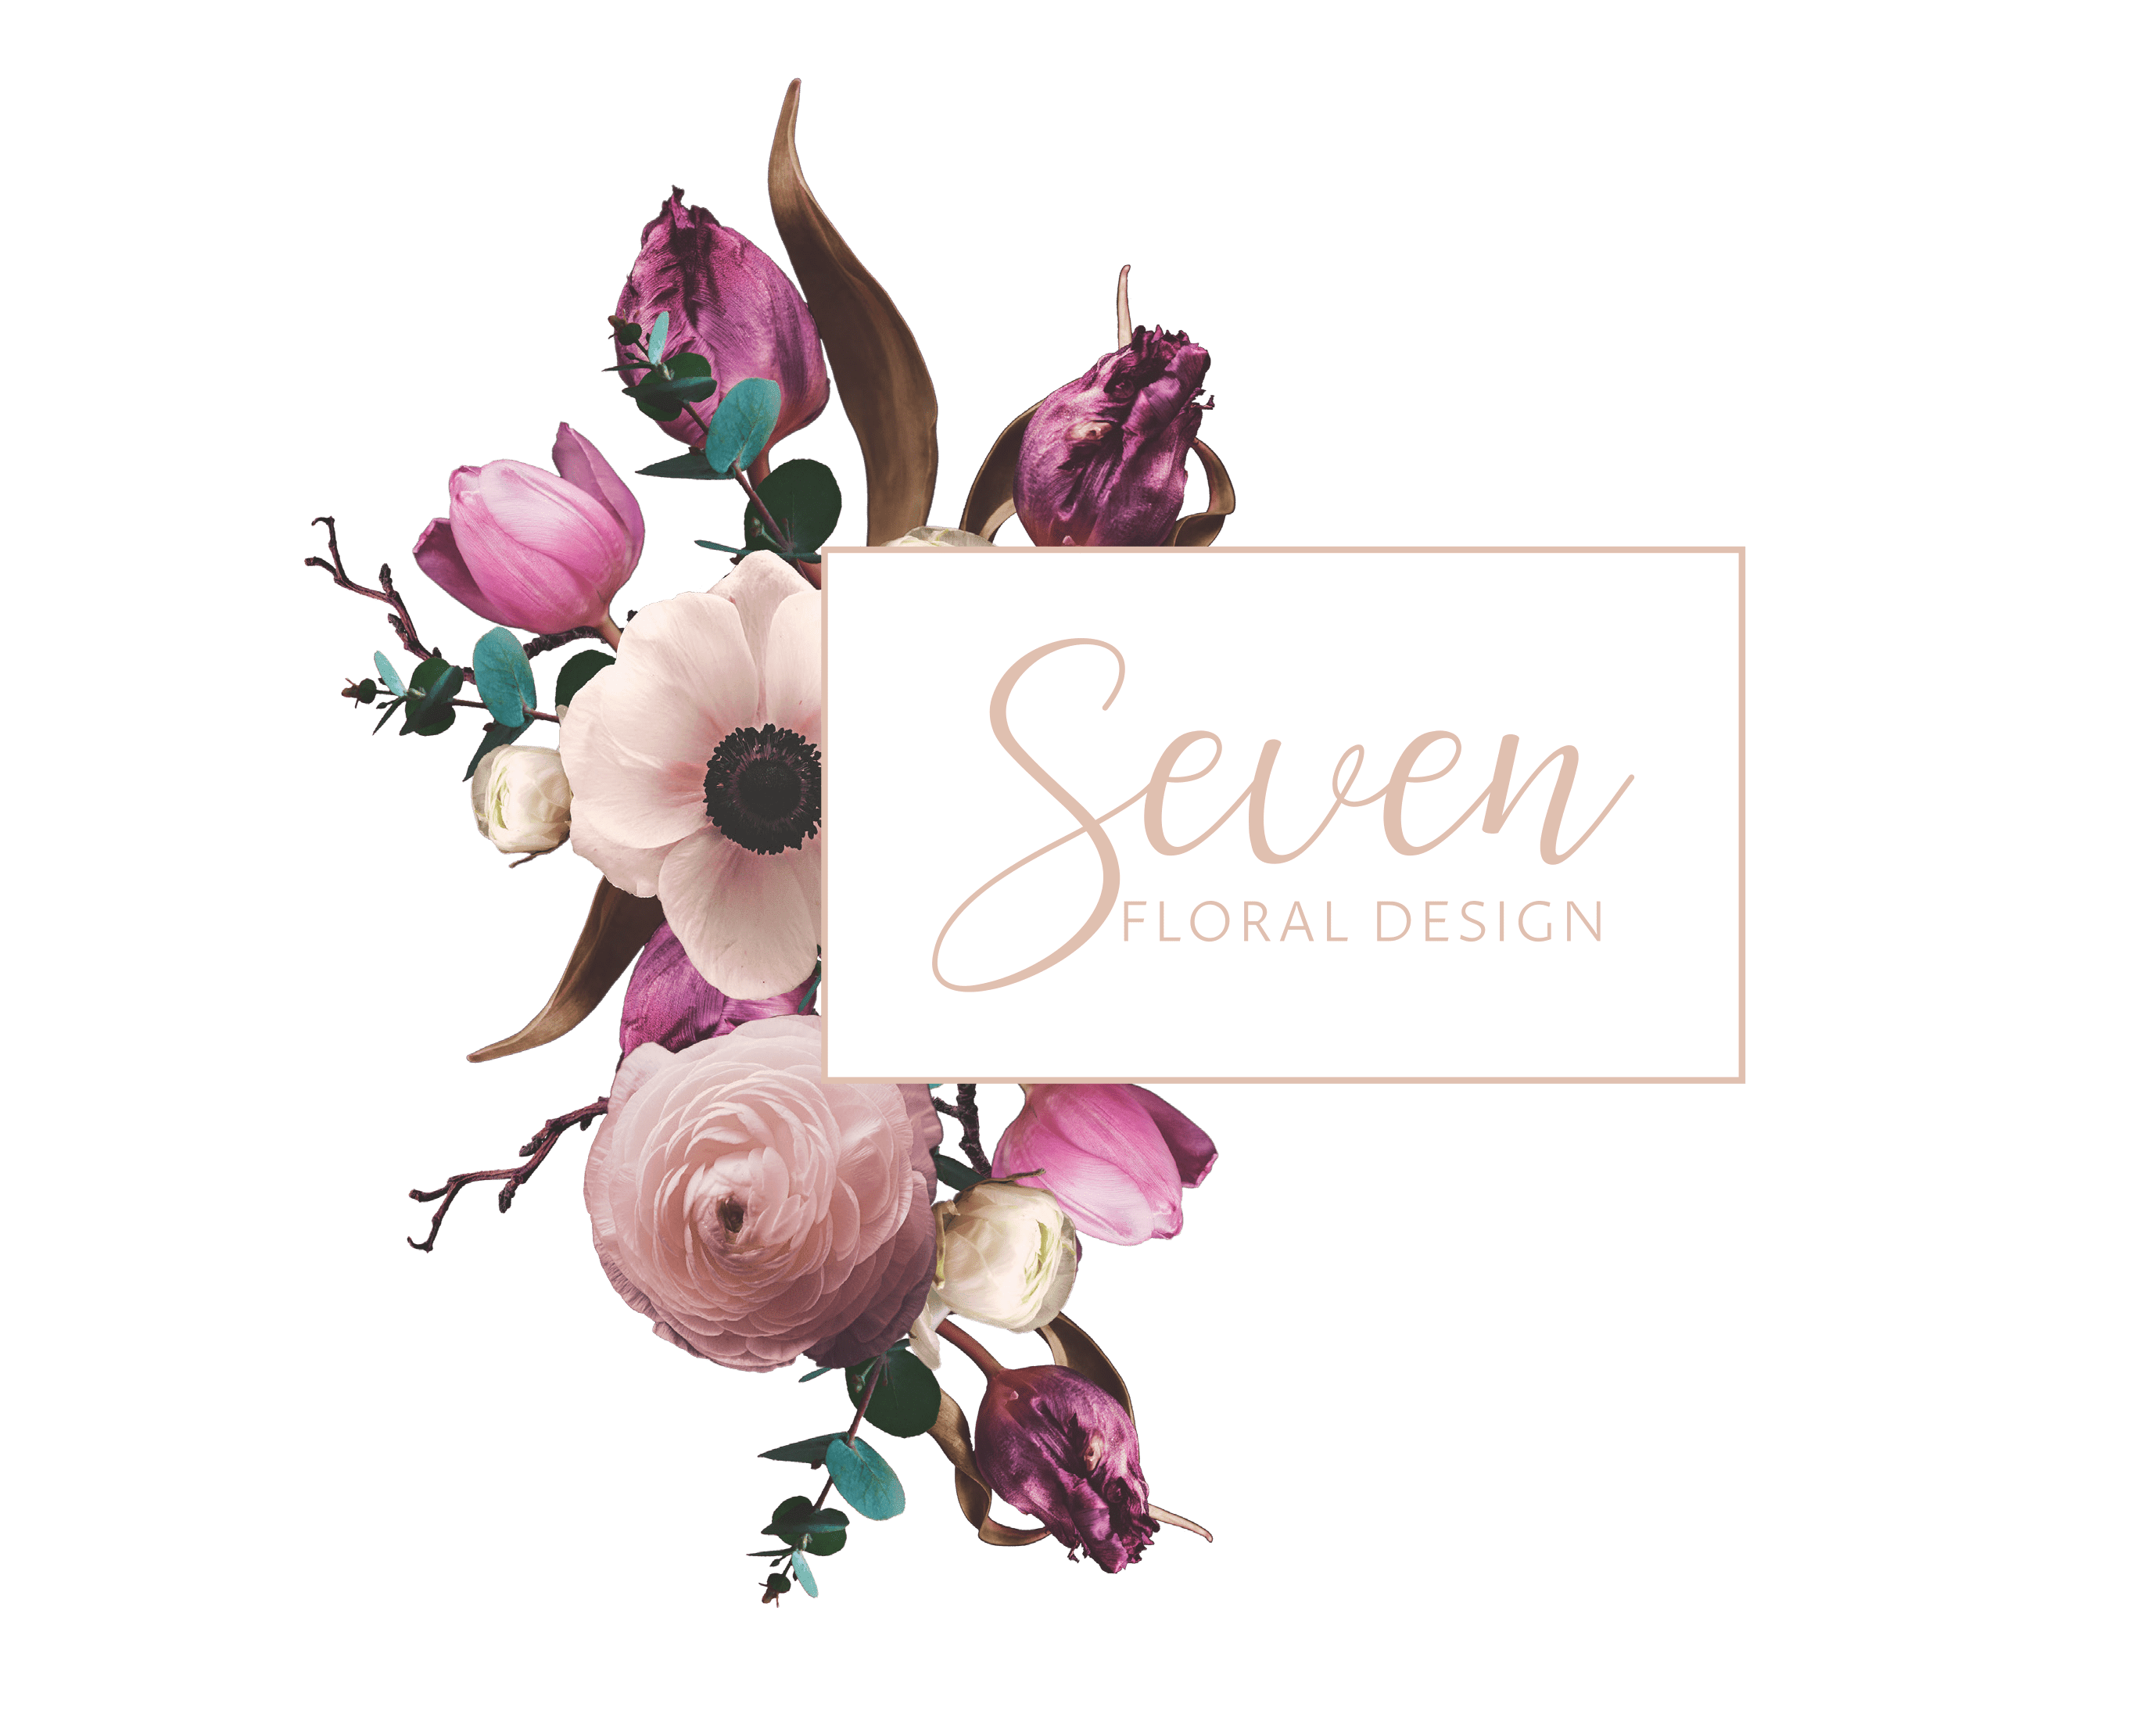 Seven Floral Design